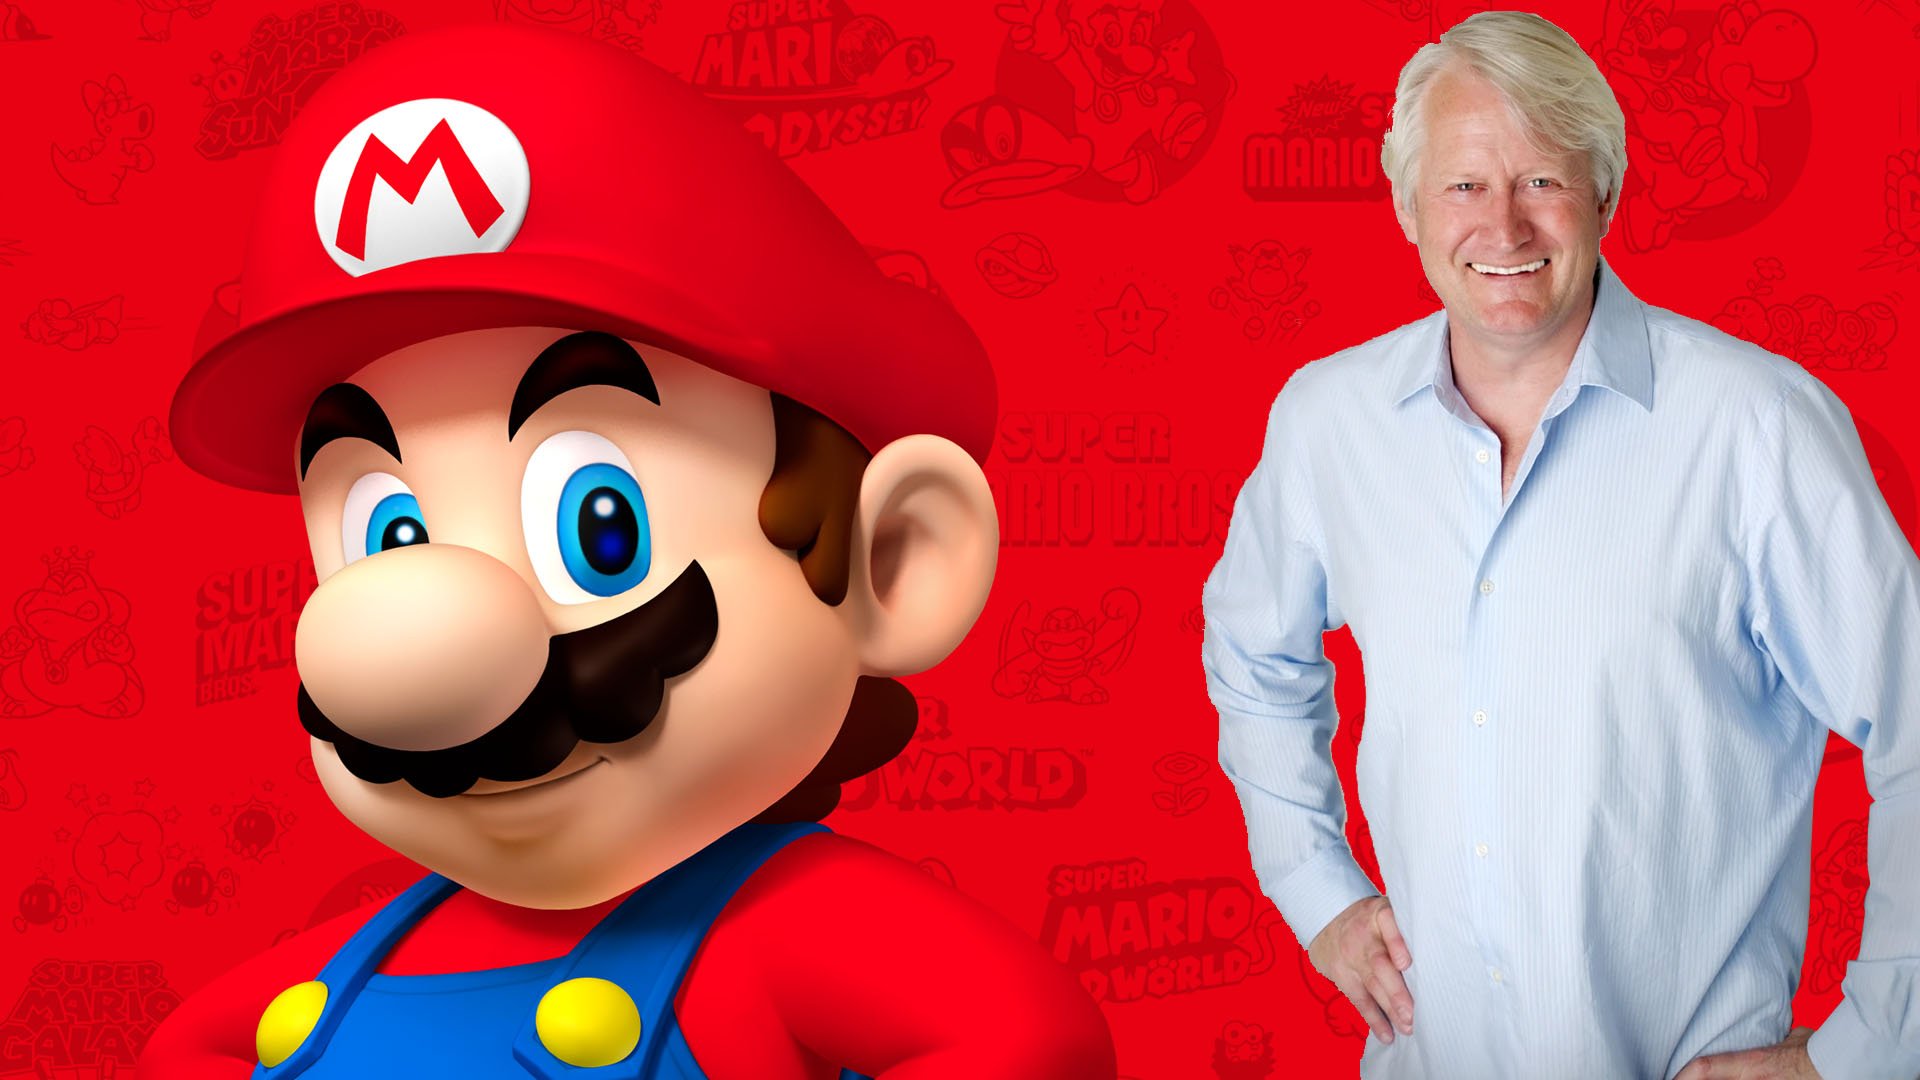 Голос Марио больше не будет озвучивать персонажей в играх Nintendo